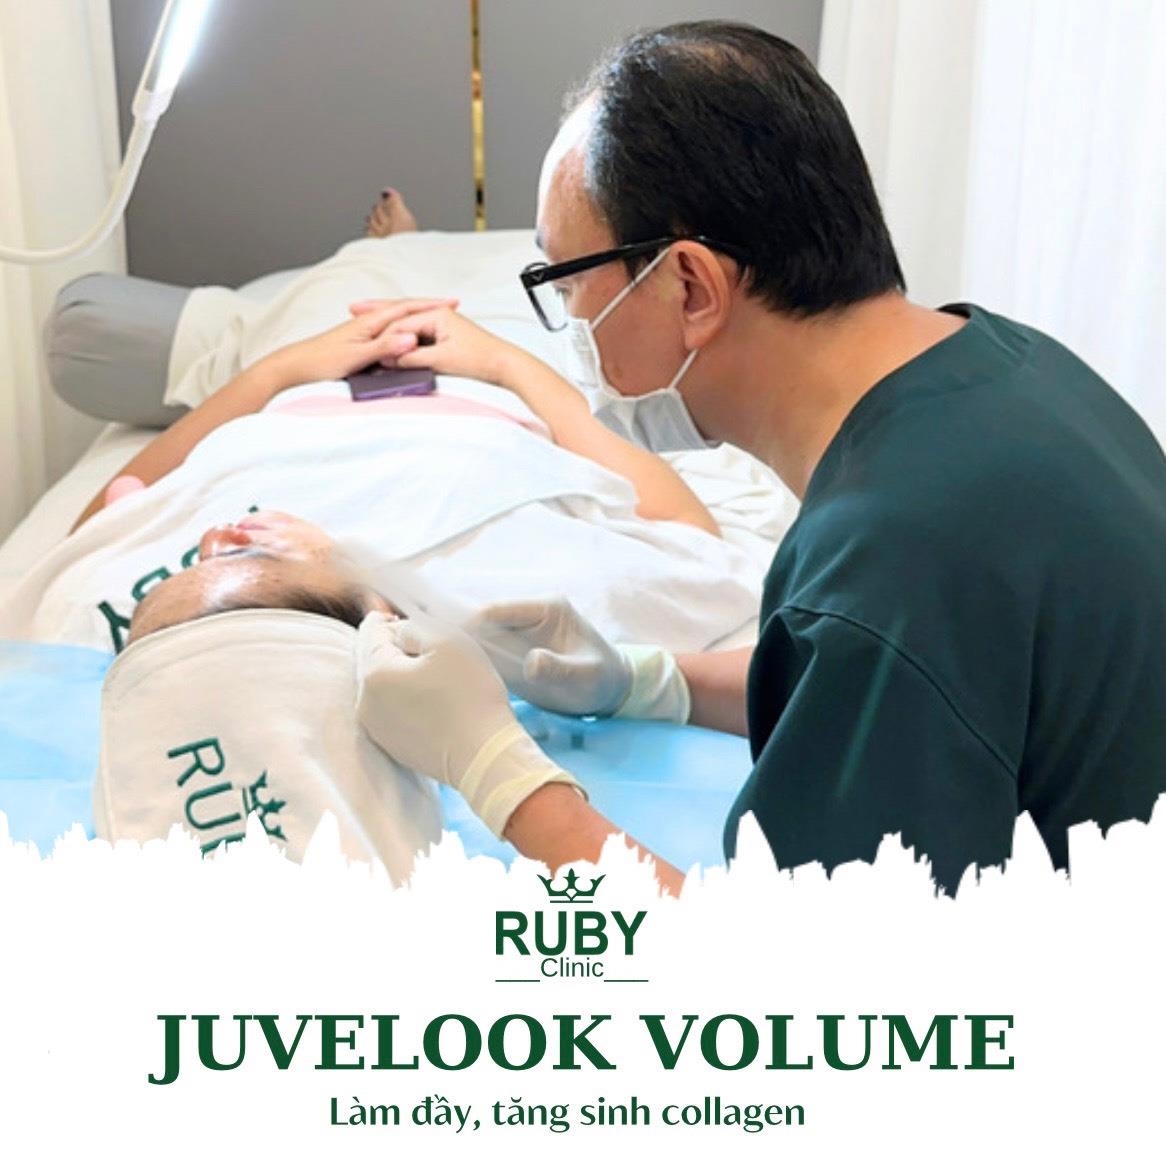 DV Juvelook Volume ( Làm Đầy, Tăng Sinh Collagen) 1ml